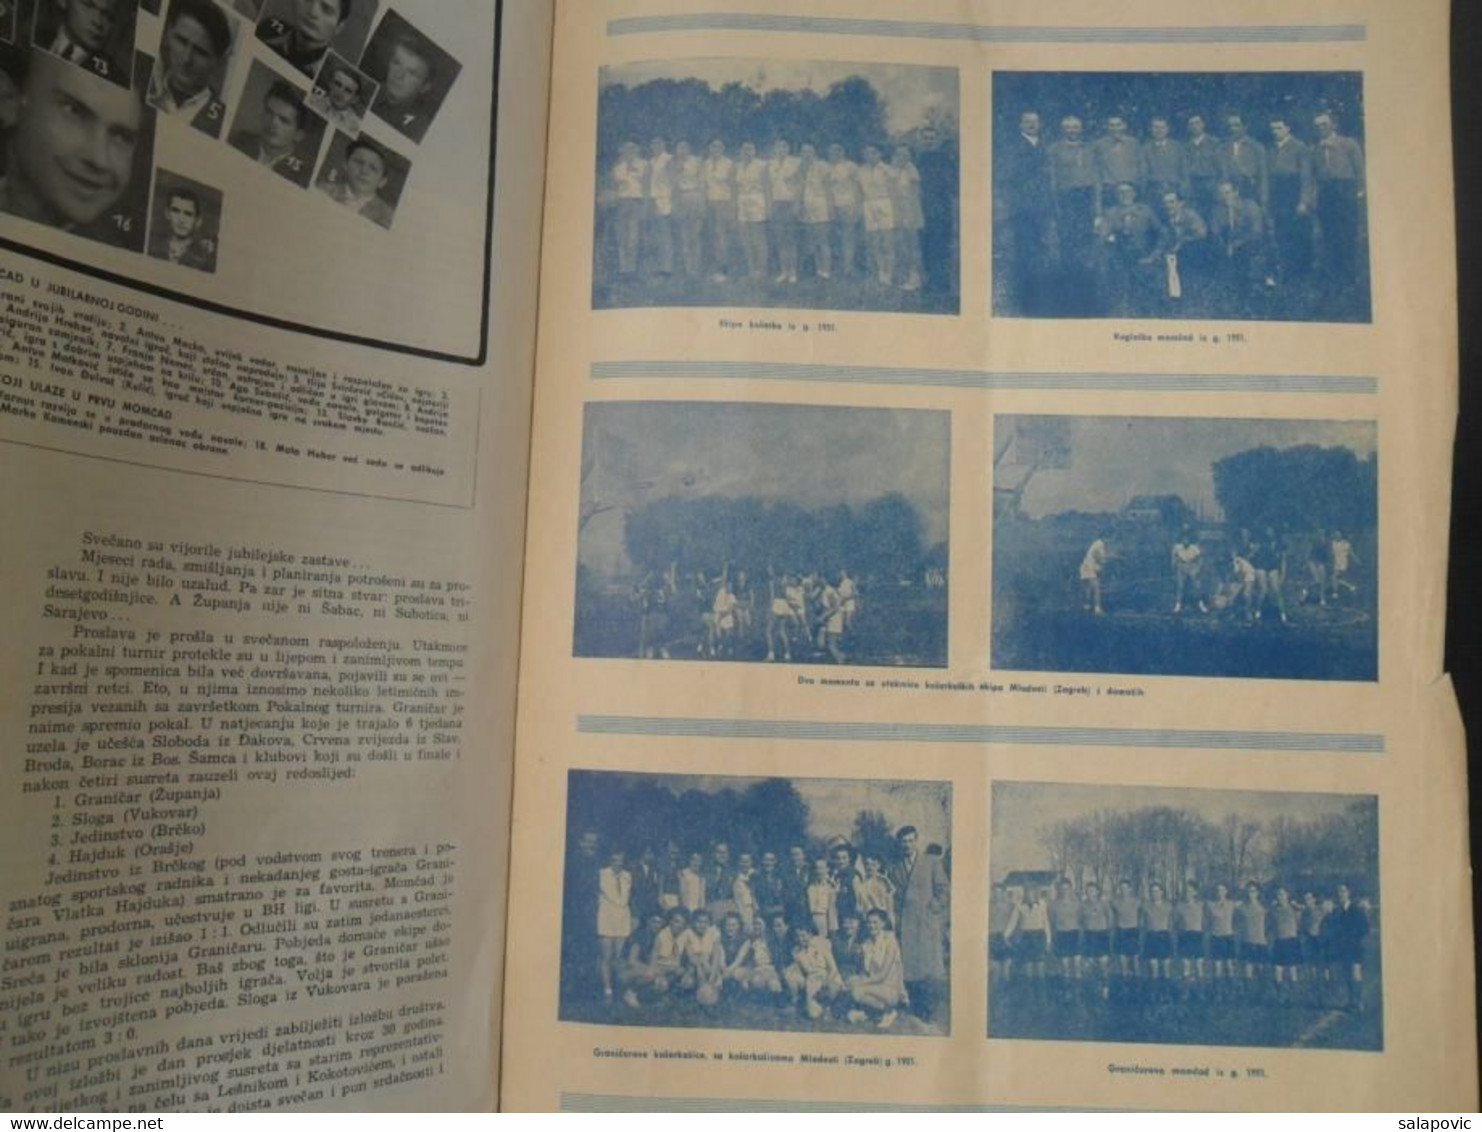 30 GODINA SPORTSKOG DRUSTVA GRANICAR ZUPANJA Monografija Football Club Croatia, Monograph - Boeken